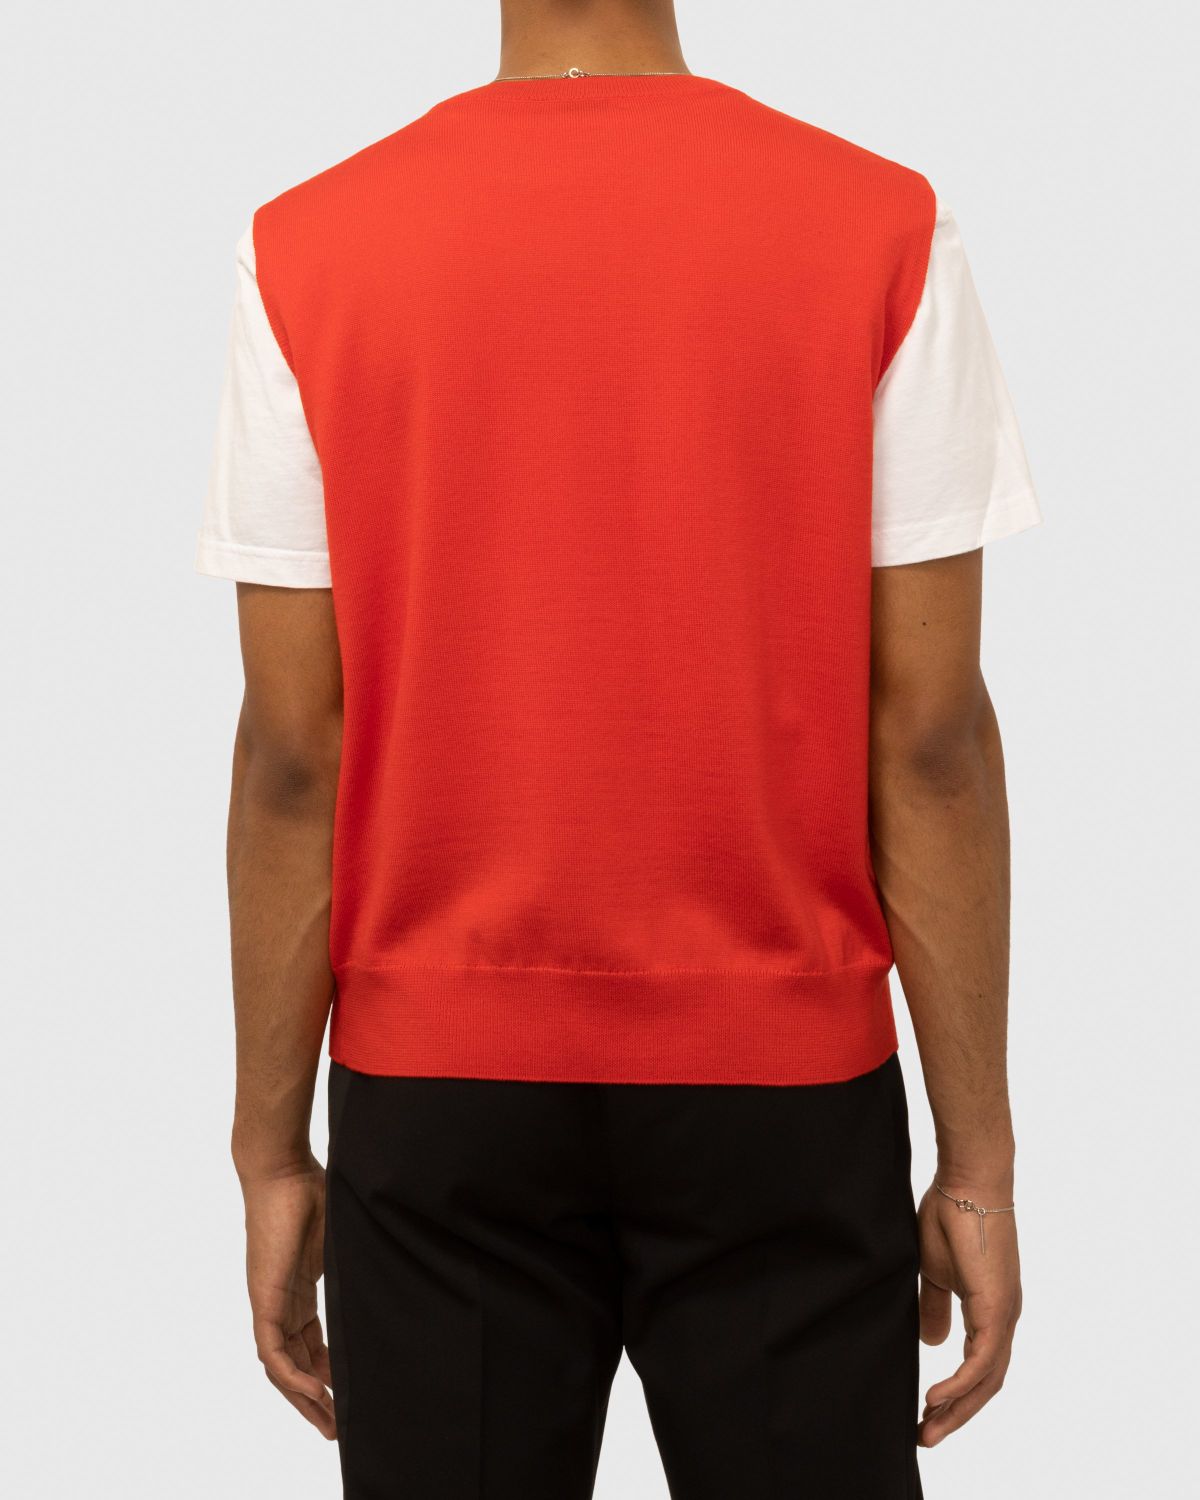 Dries van Noten – Neptune Sweater Vest Red - Knitwear - Red - Image 3